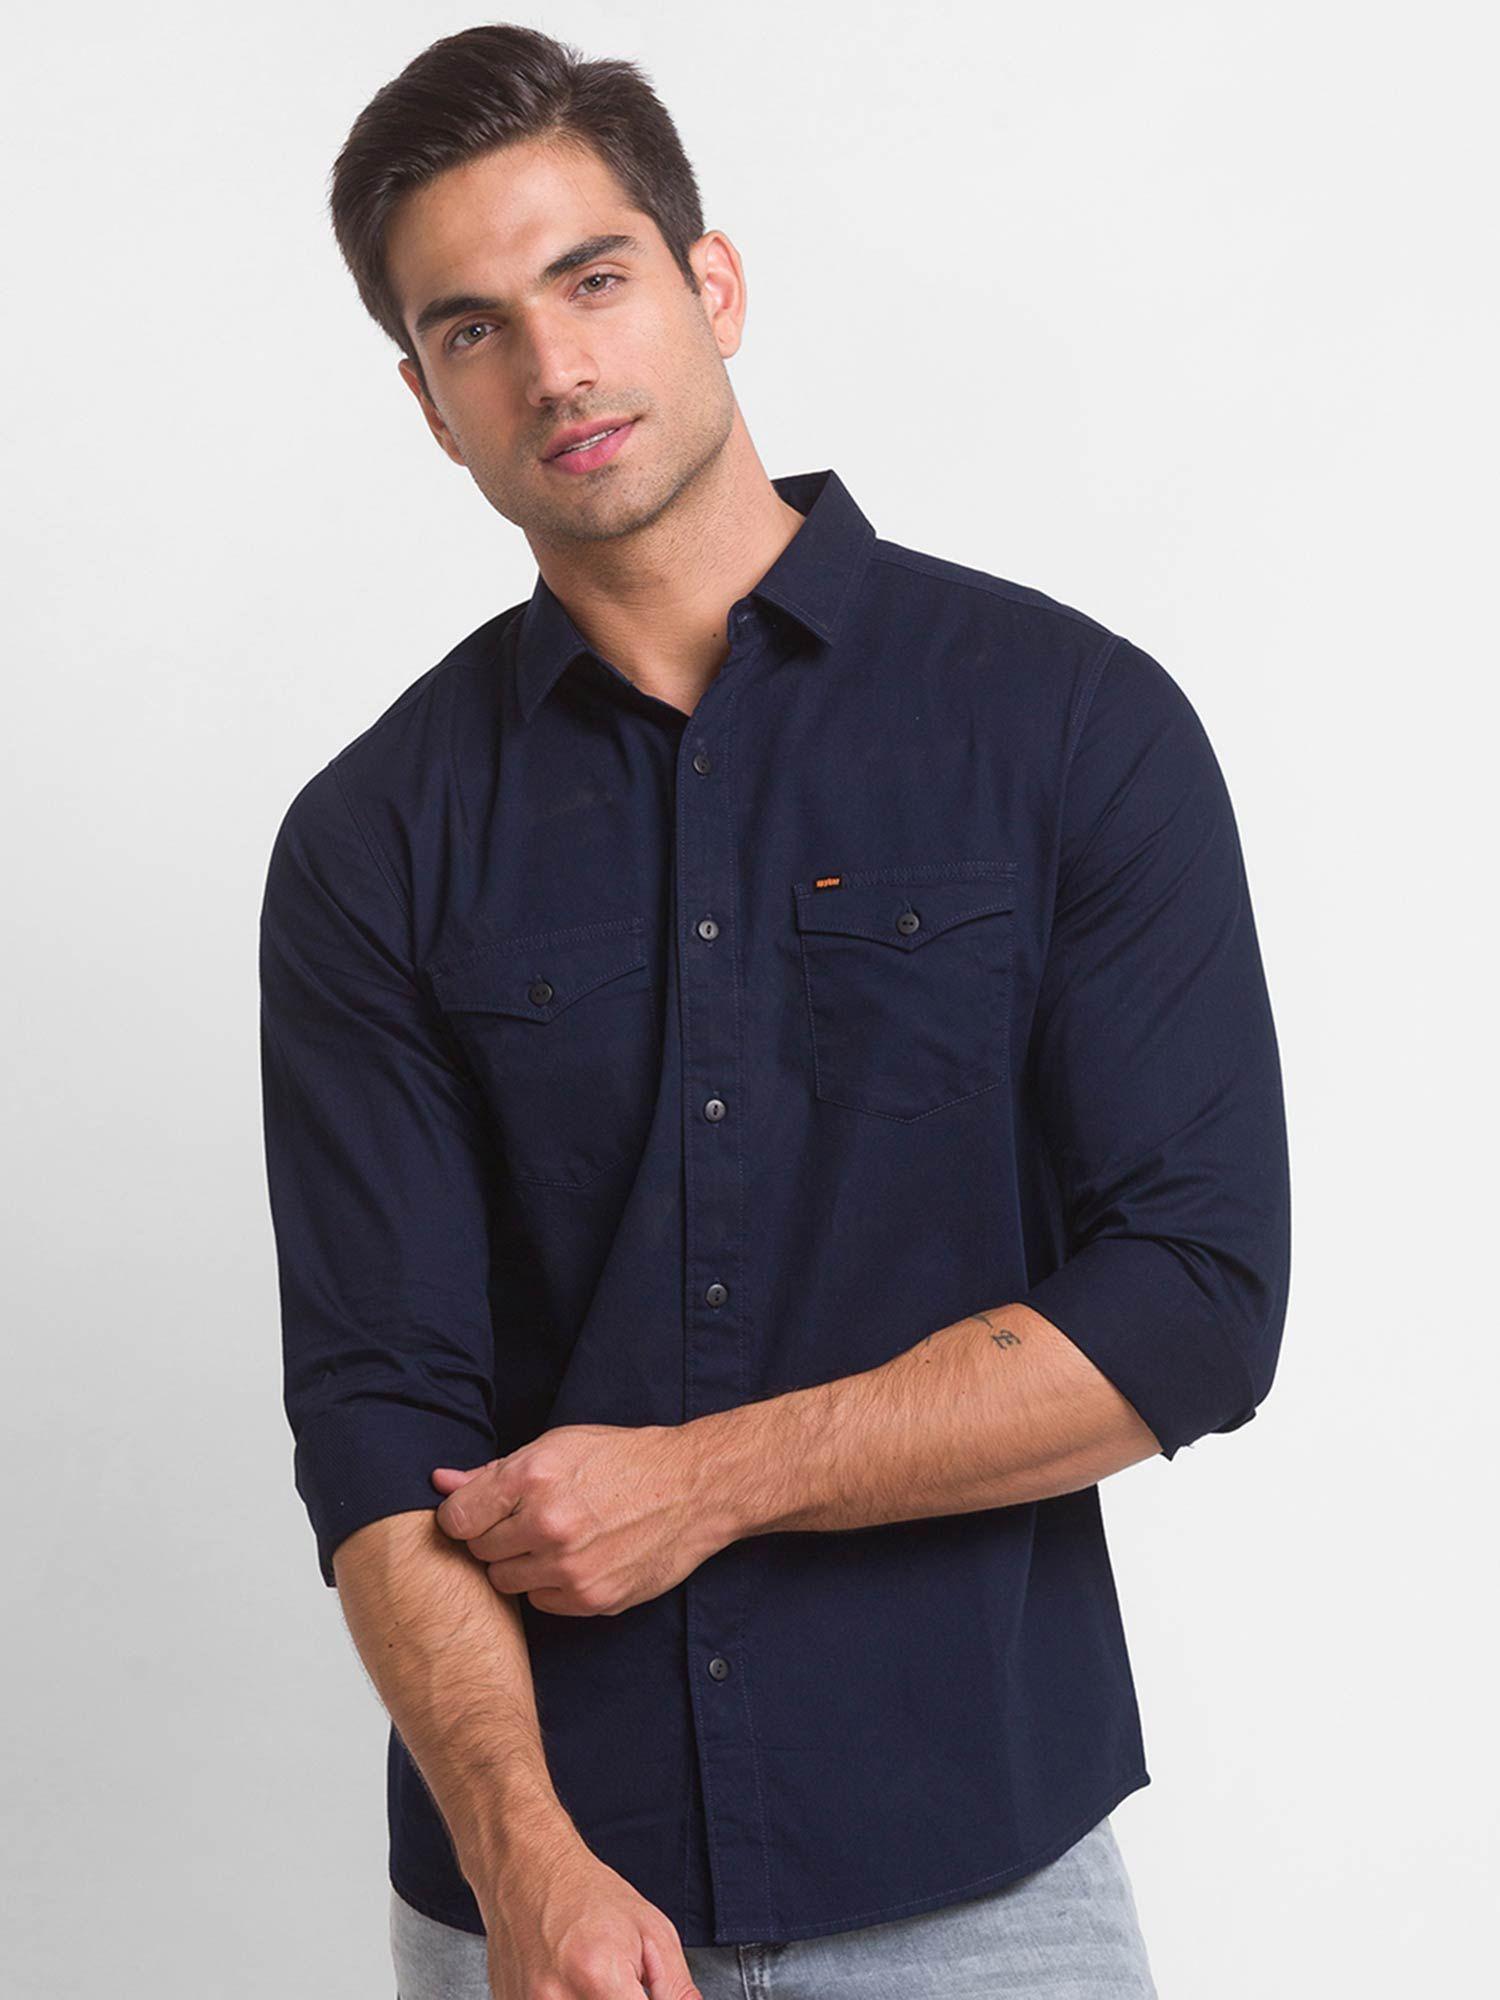 navy-blue-cotton-full-sleeve-plain-shirt-for-men